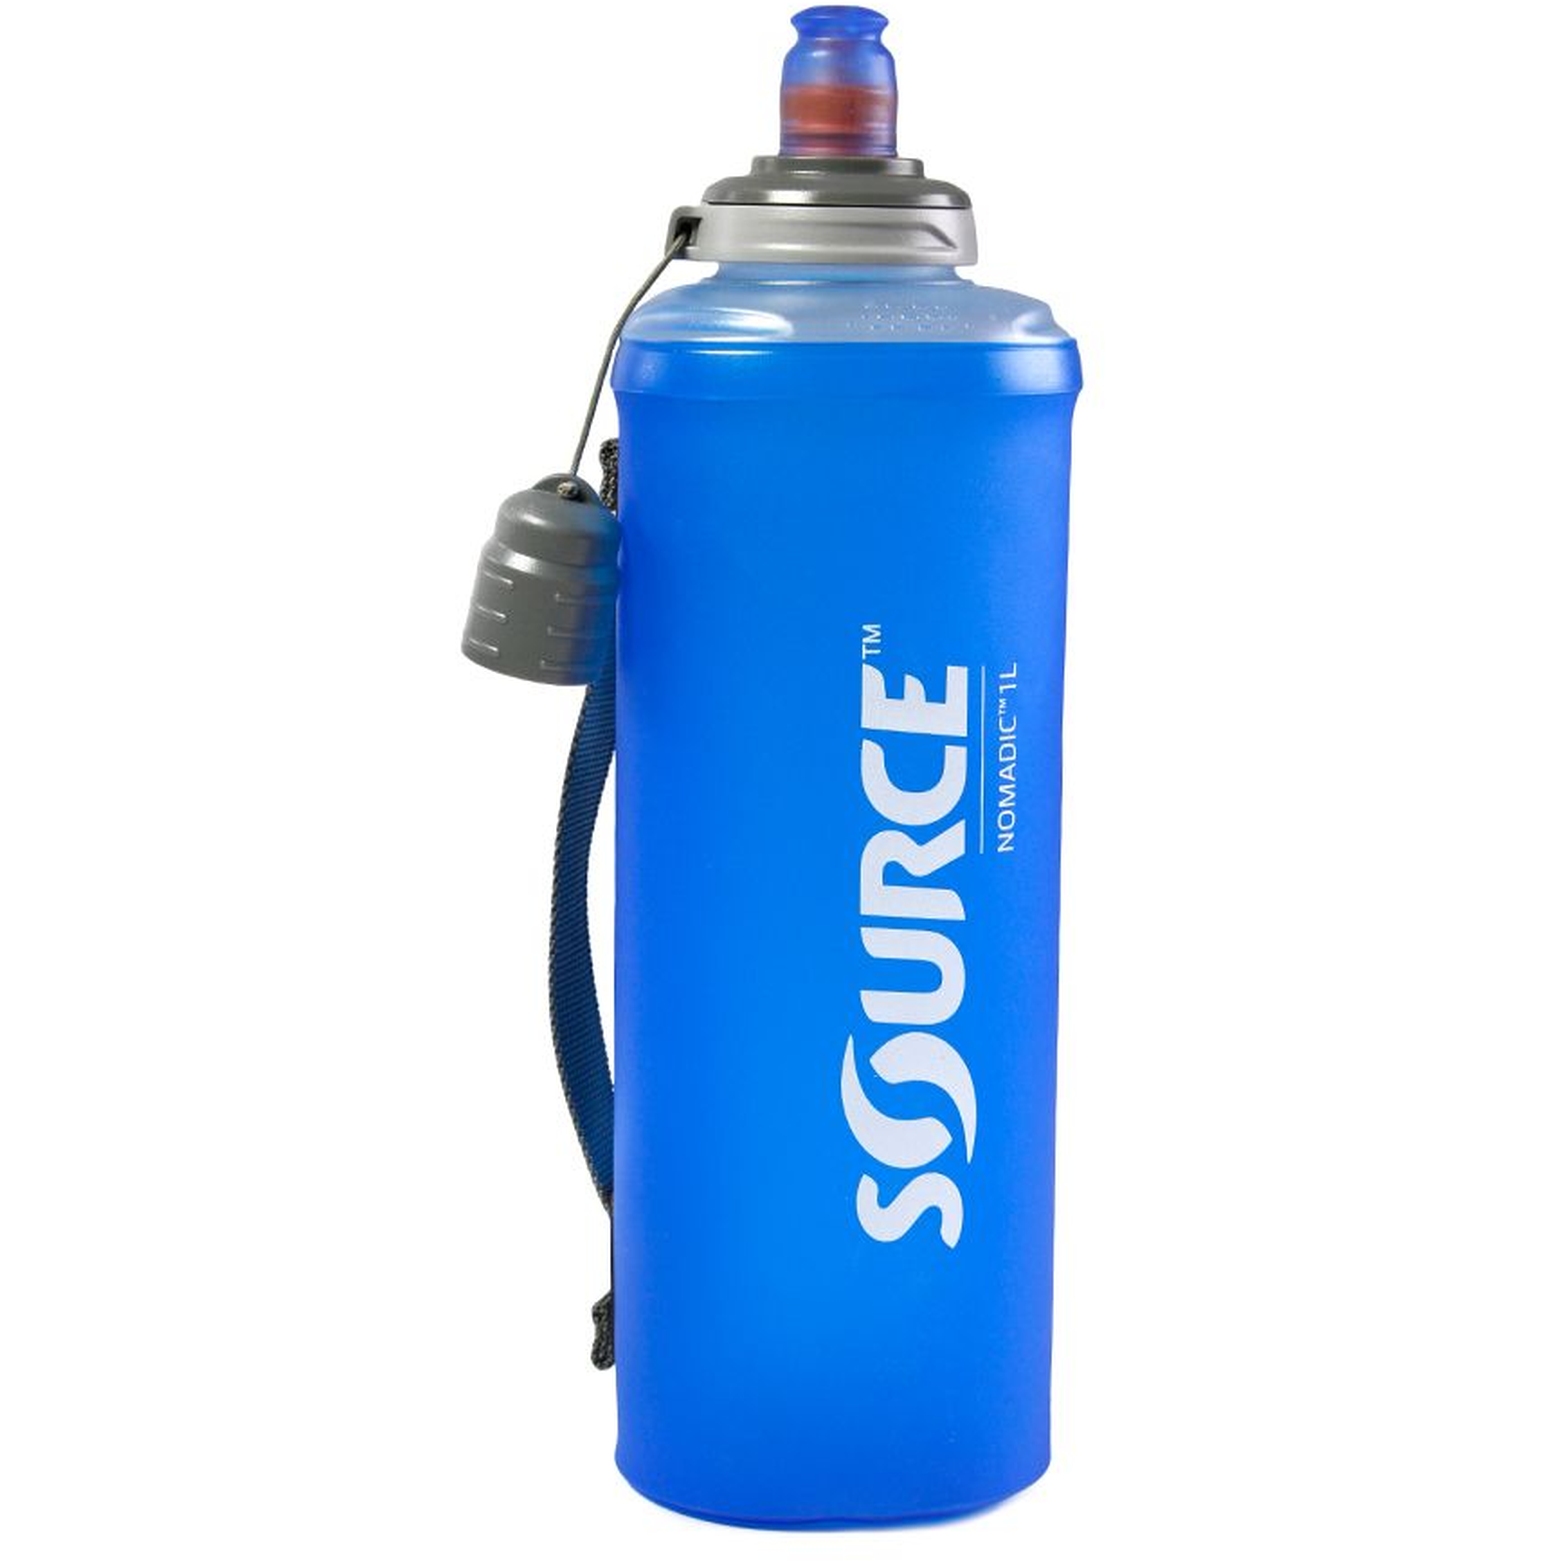 Produktbild von Source Nomadic Faltbare Trinkflasche 1L - blau